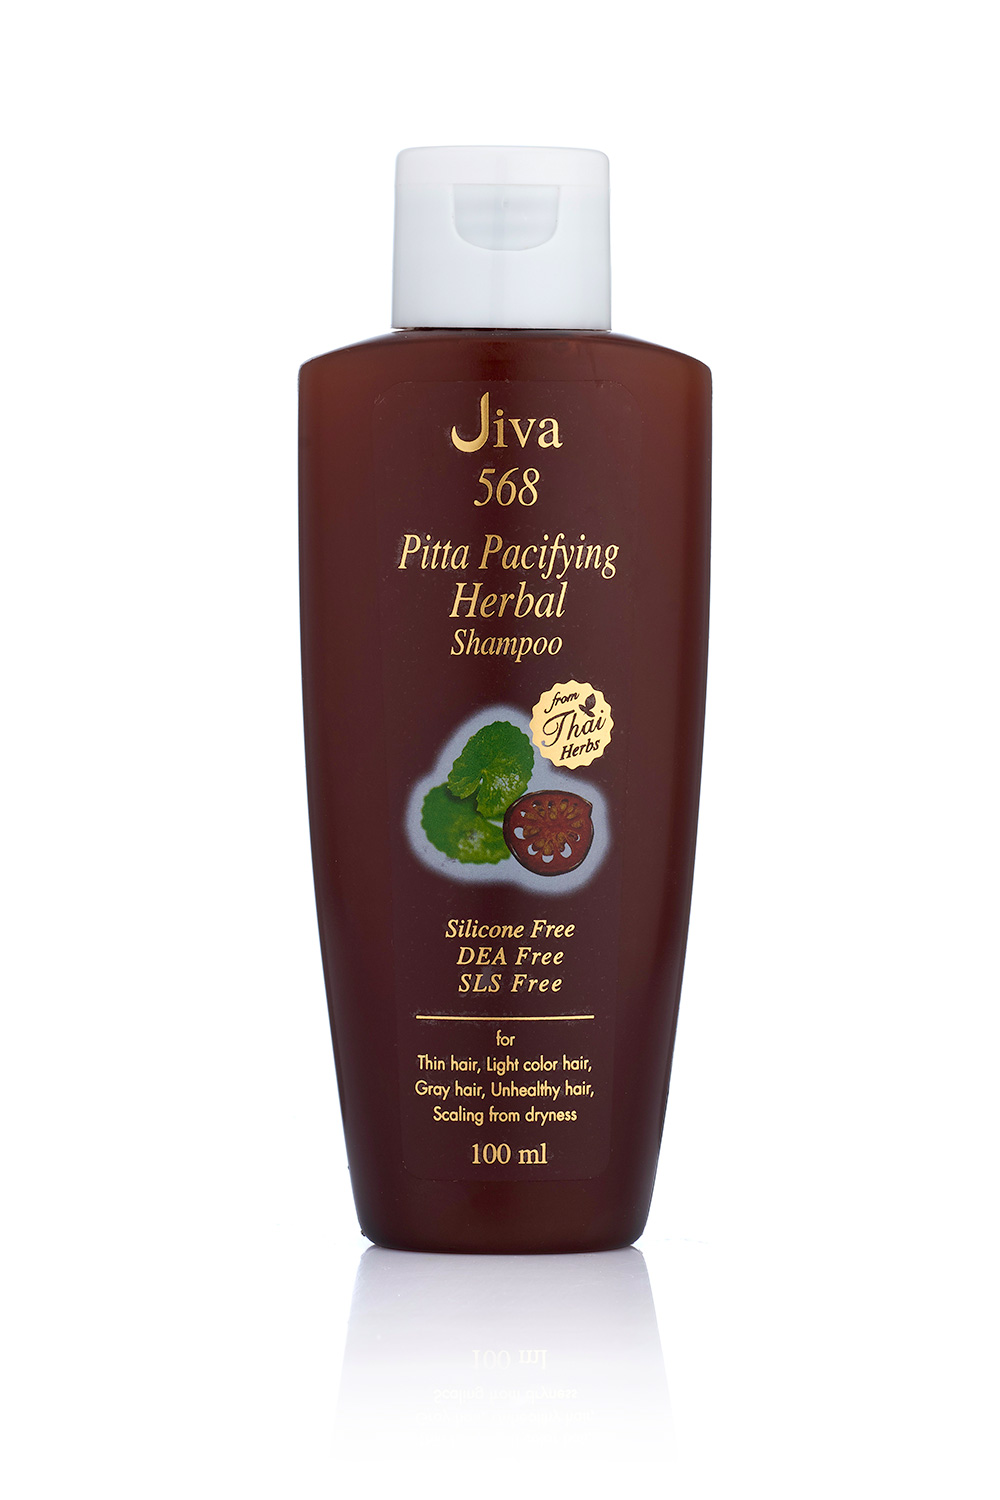 JIVA Pitta Pacifying Herbal Shampoo - จีวา ปิต้า แปซิไฟอิ้ง เฮอบอล แชมพู